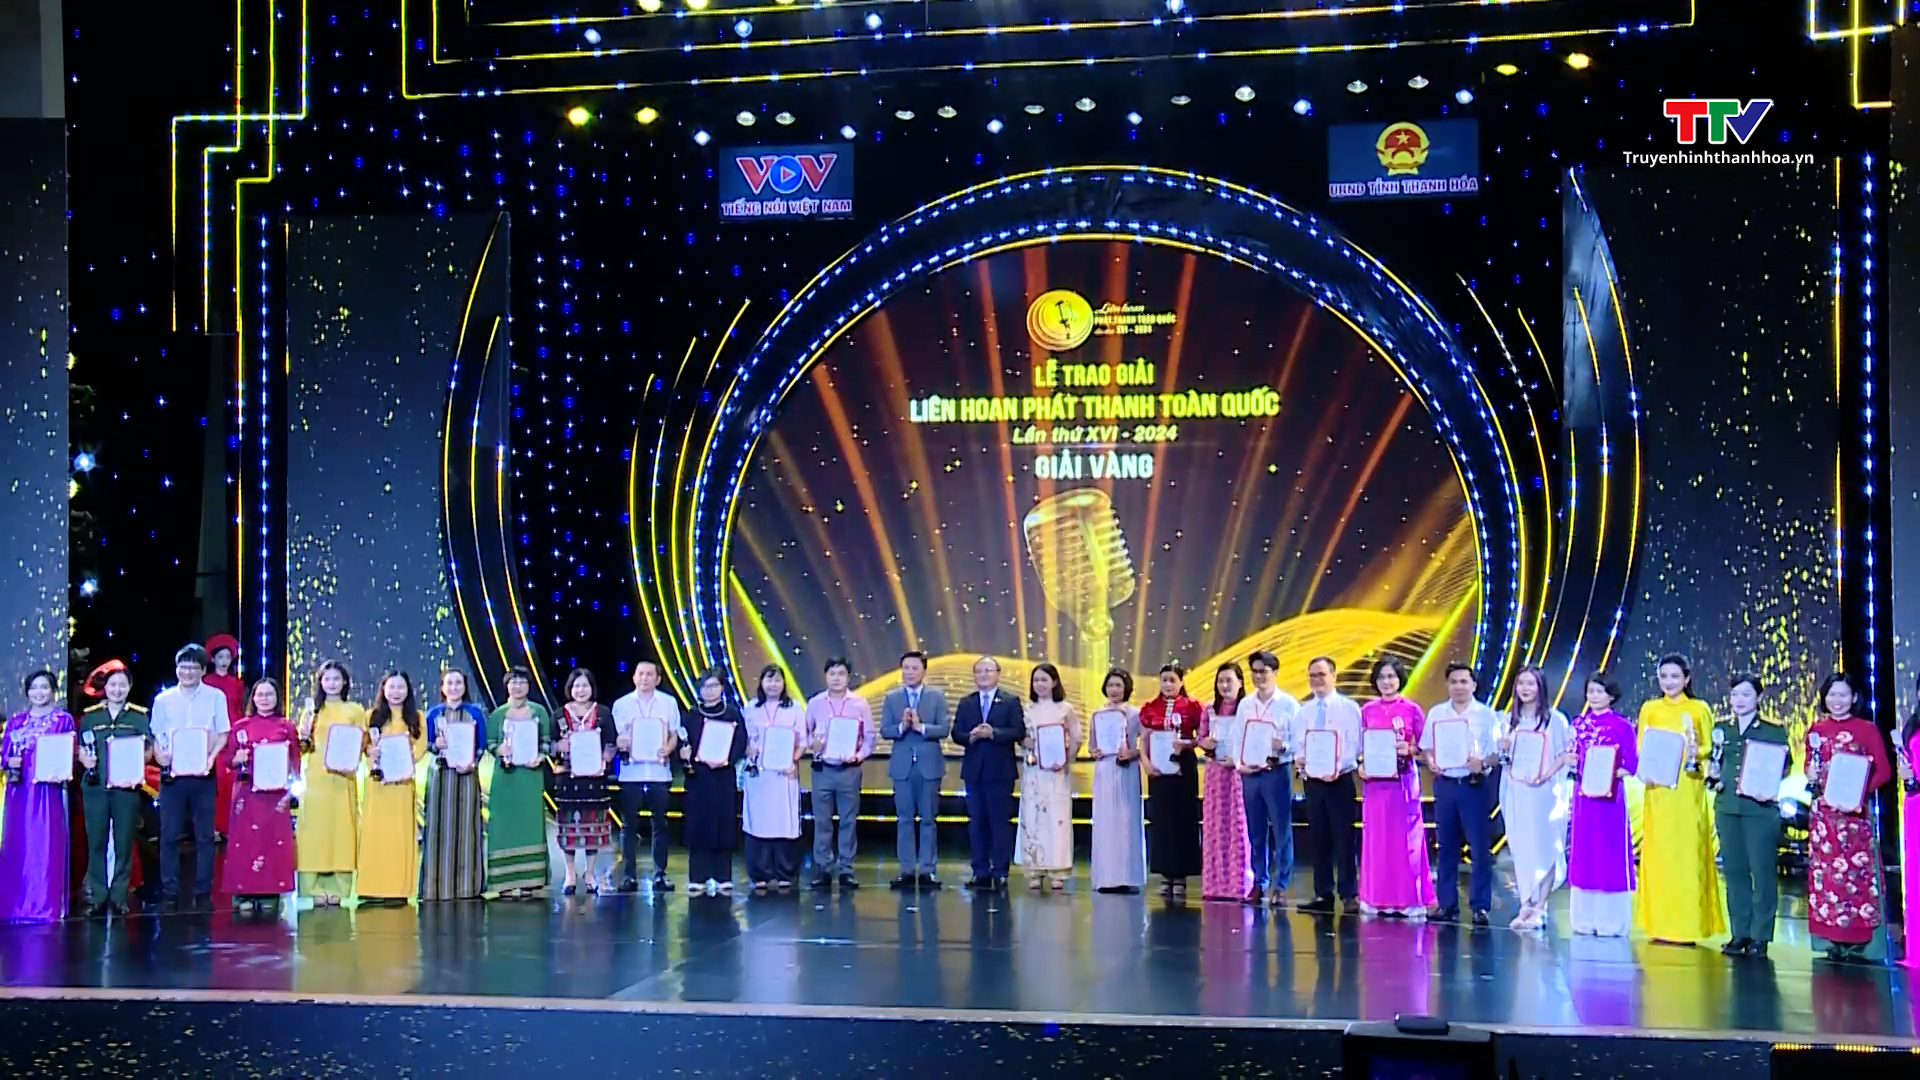 Đài Phát thanh và Truyền hình Thanh Hoá đạt nhiều giải cao tại Liên hoan Phát thanh toàn quốc lần thứ XVI - năm 2024- Ảnh 2.